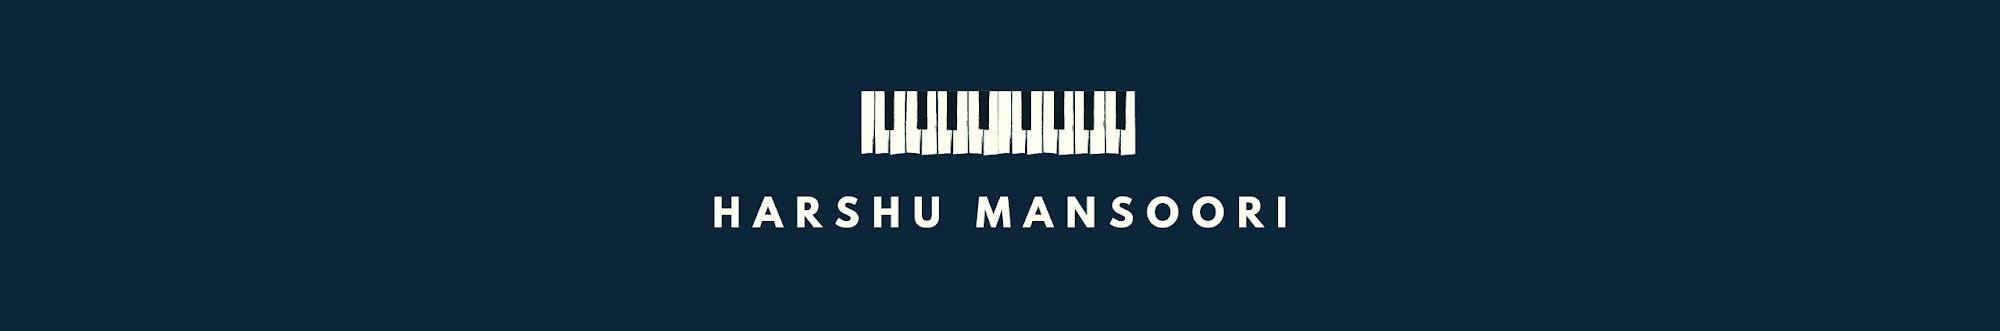 HARSHU MANSOORI